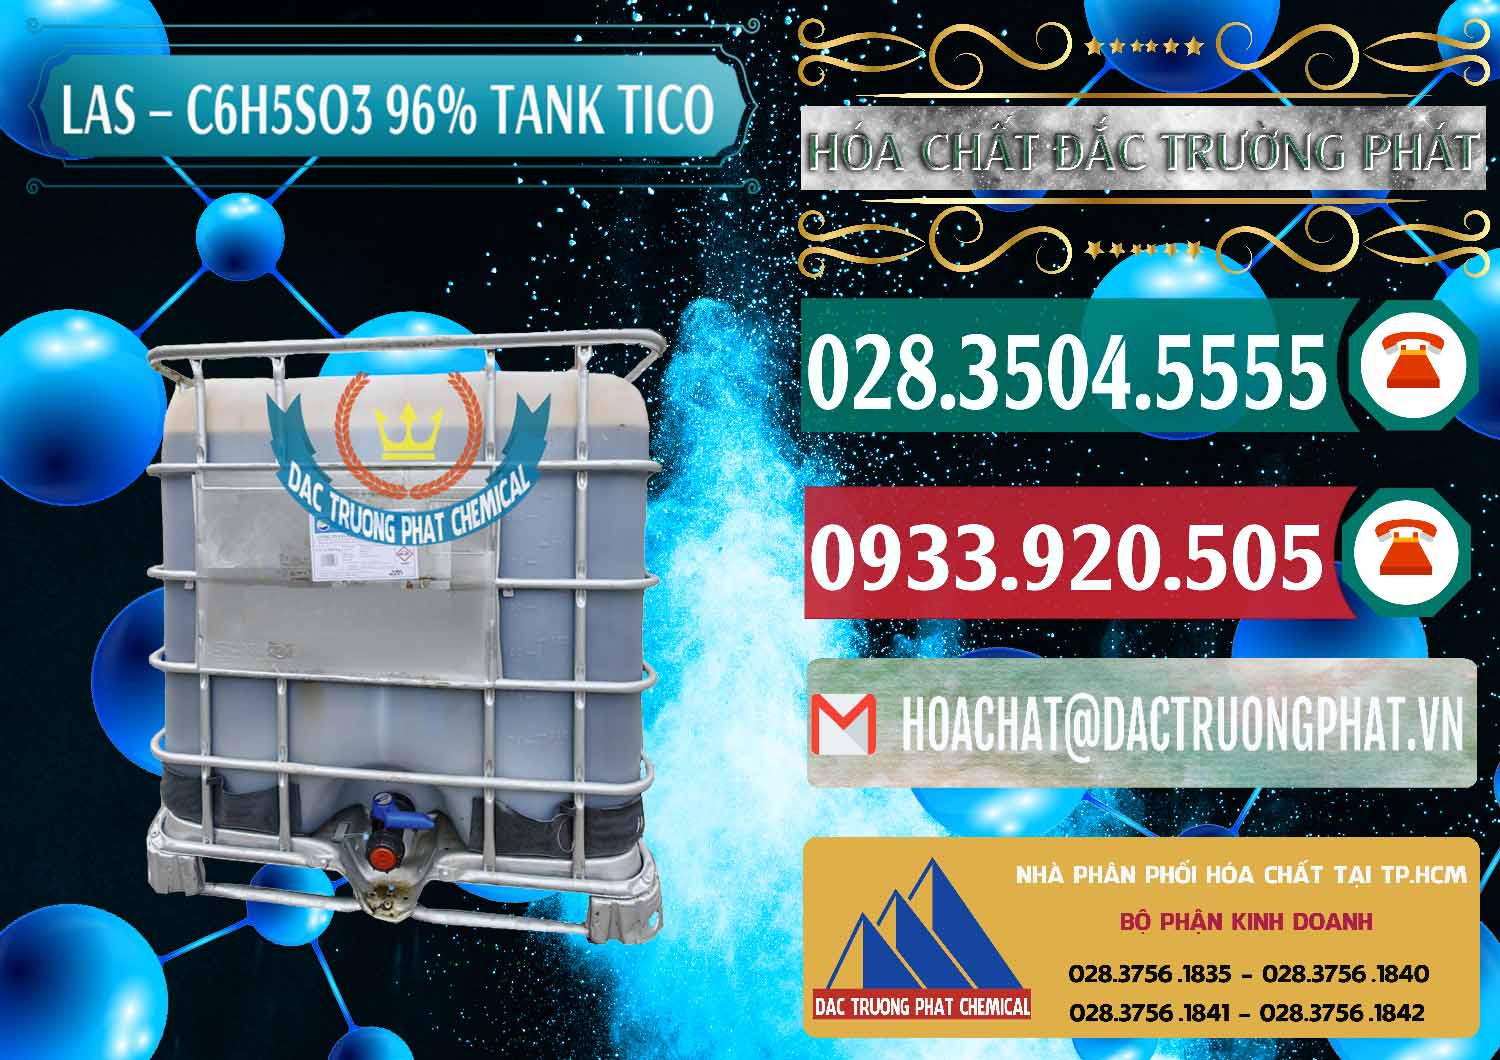 Nơi chuyên phân phối _ bán Chất tạo bọt Las P Tico Tank IBC Bồn Việt Nam - 0488 - Chuyên kinh doanh ( cung cấp ) hóa chất tại TP.HCM - muabanhoachat.vn